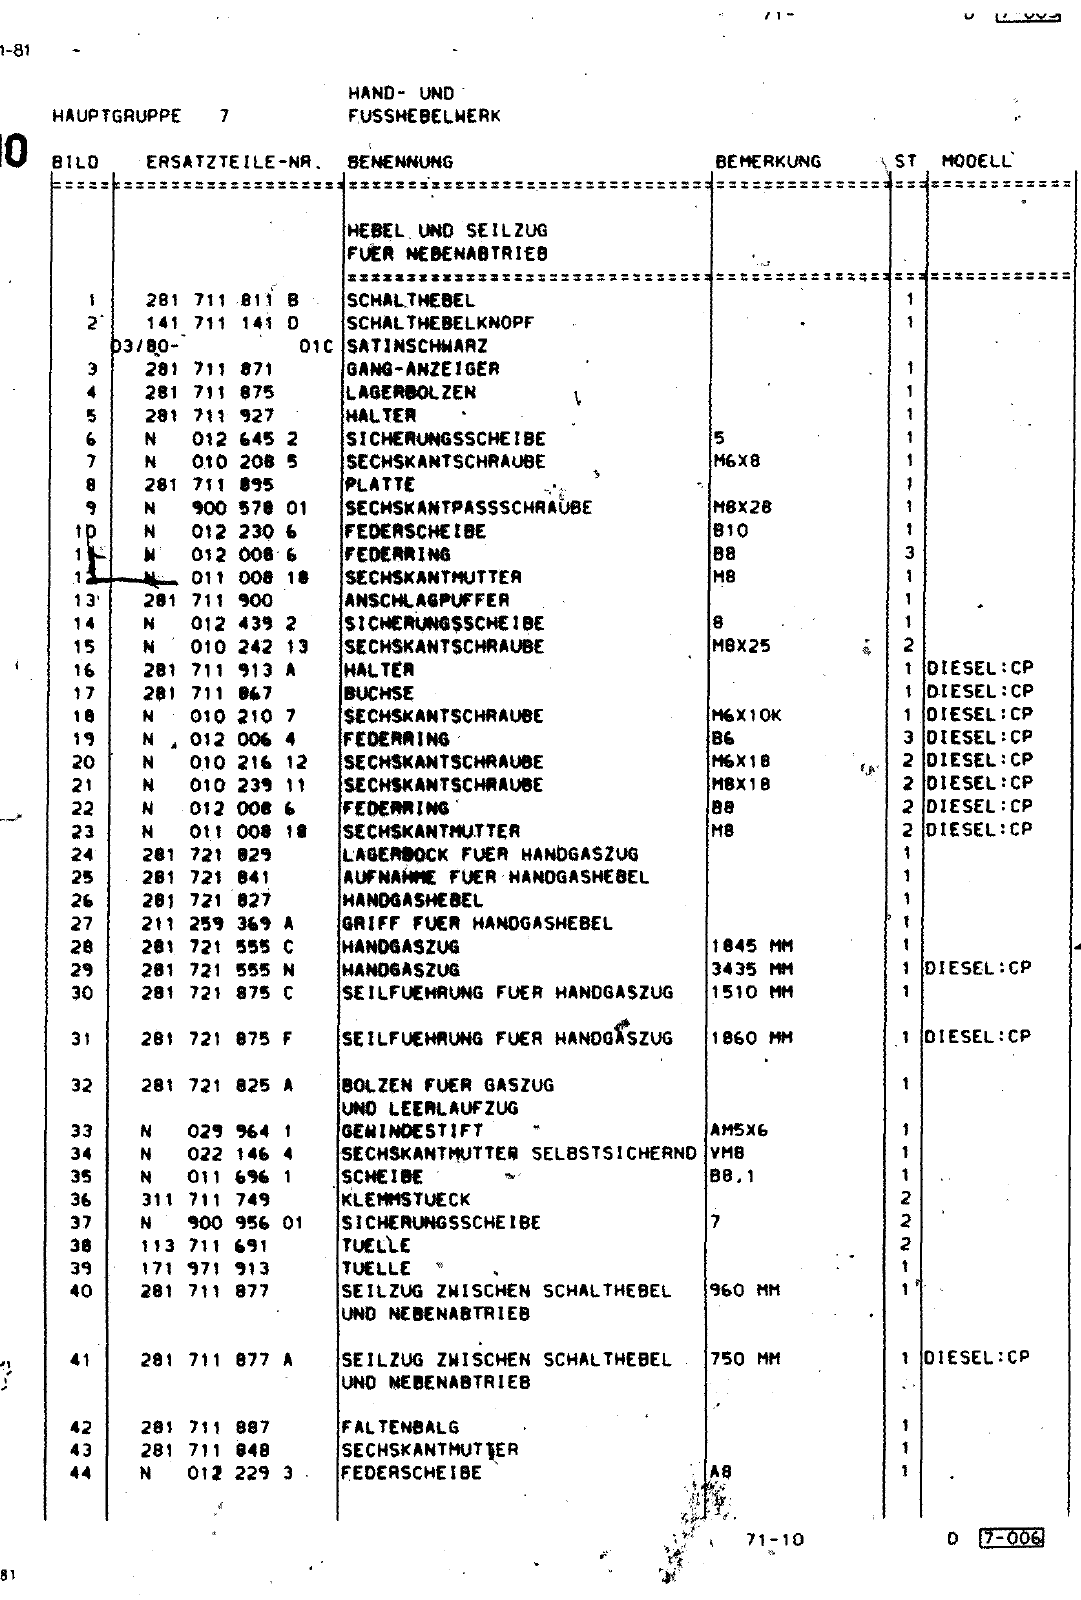 Vorschau Lastentransporter LT F-28-D-007 273 Seite 410